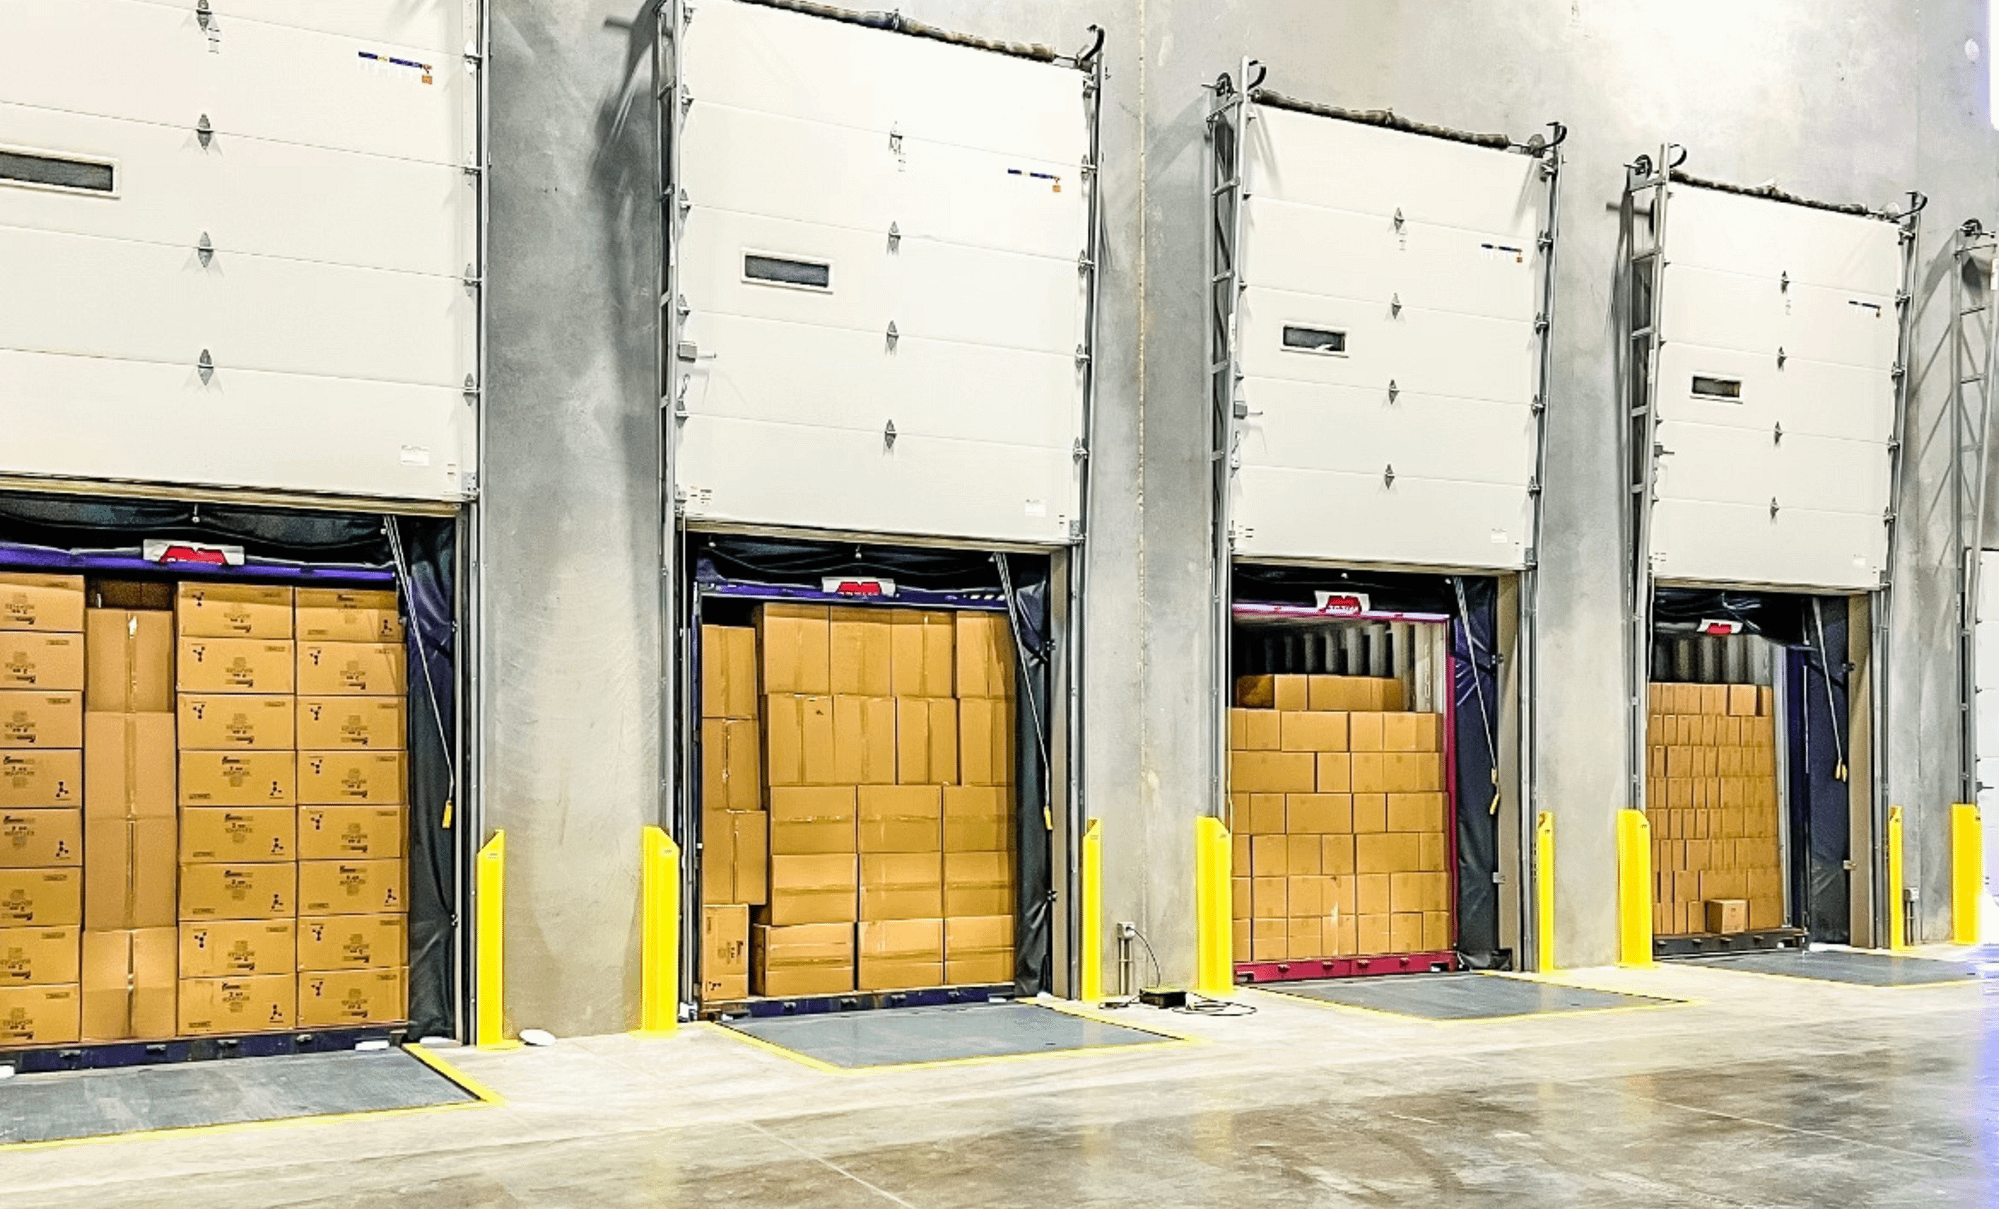 Warehouse docks full of trucks